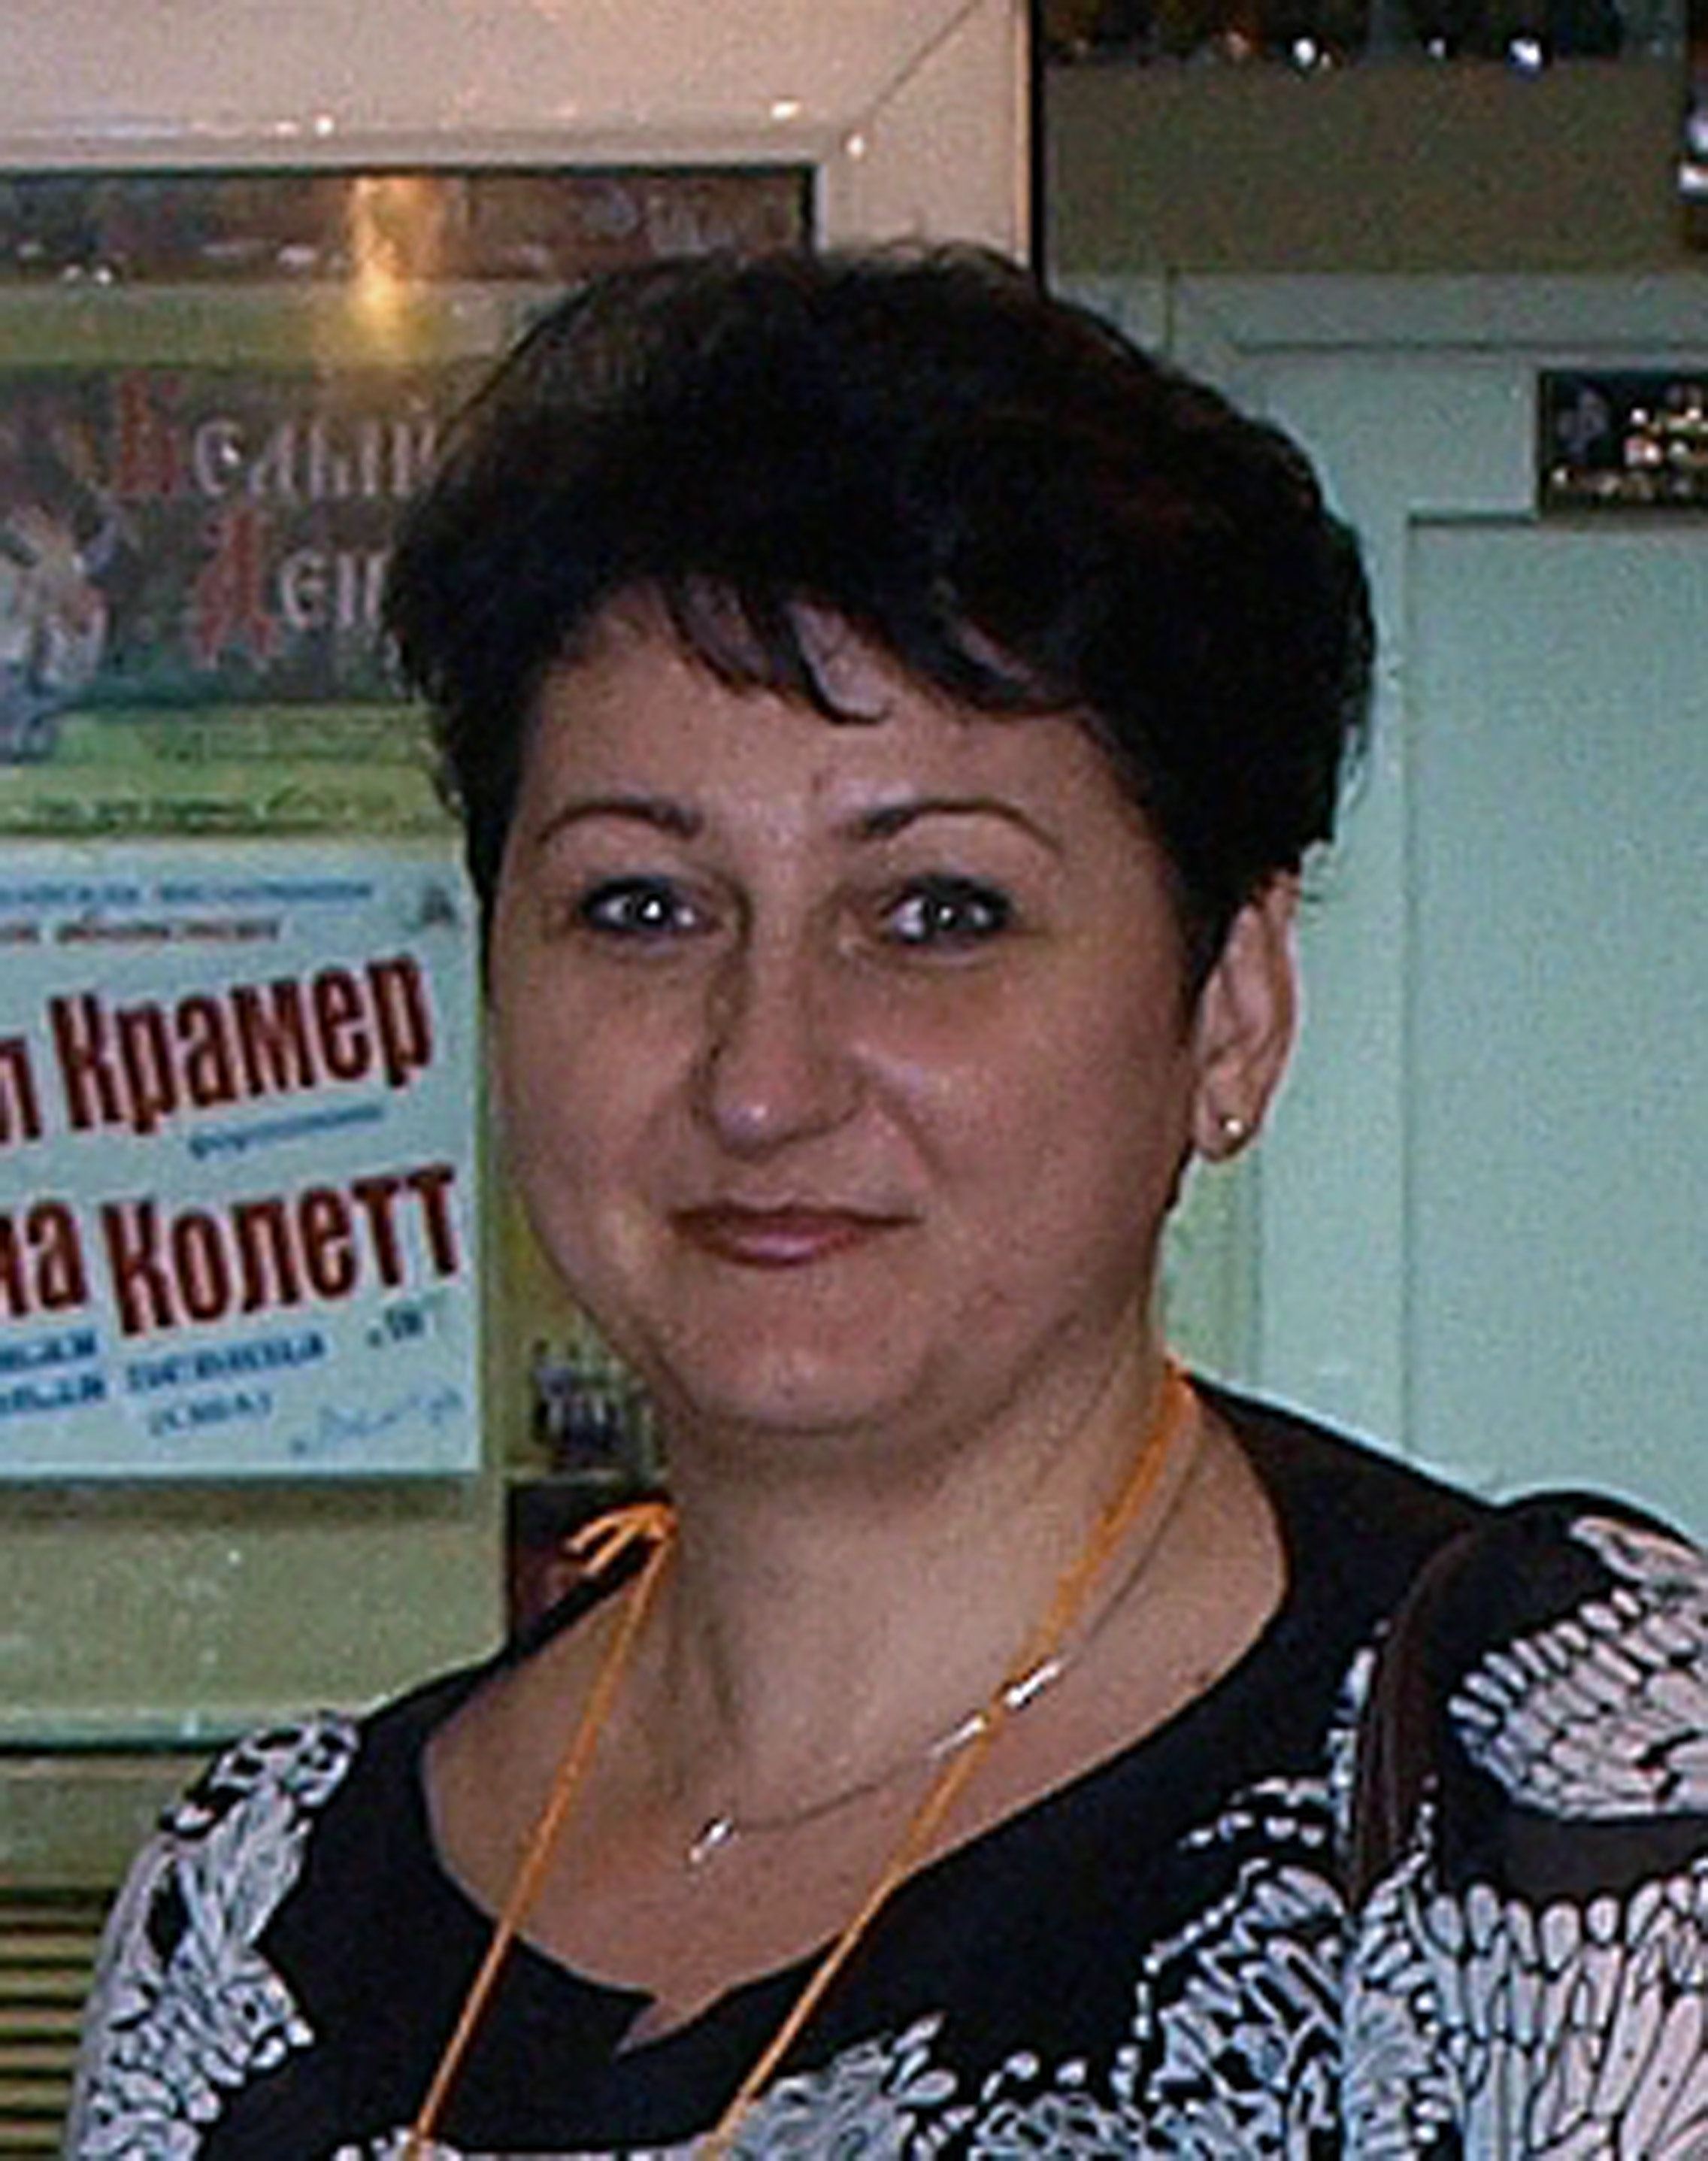             Козырева Ирина Владимировна
    